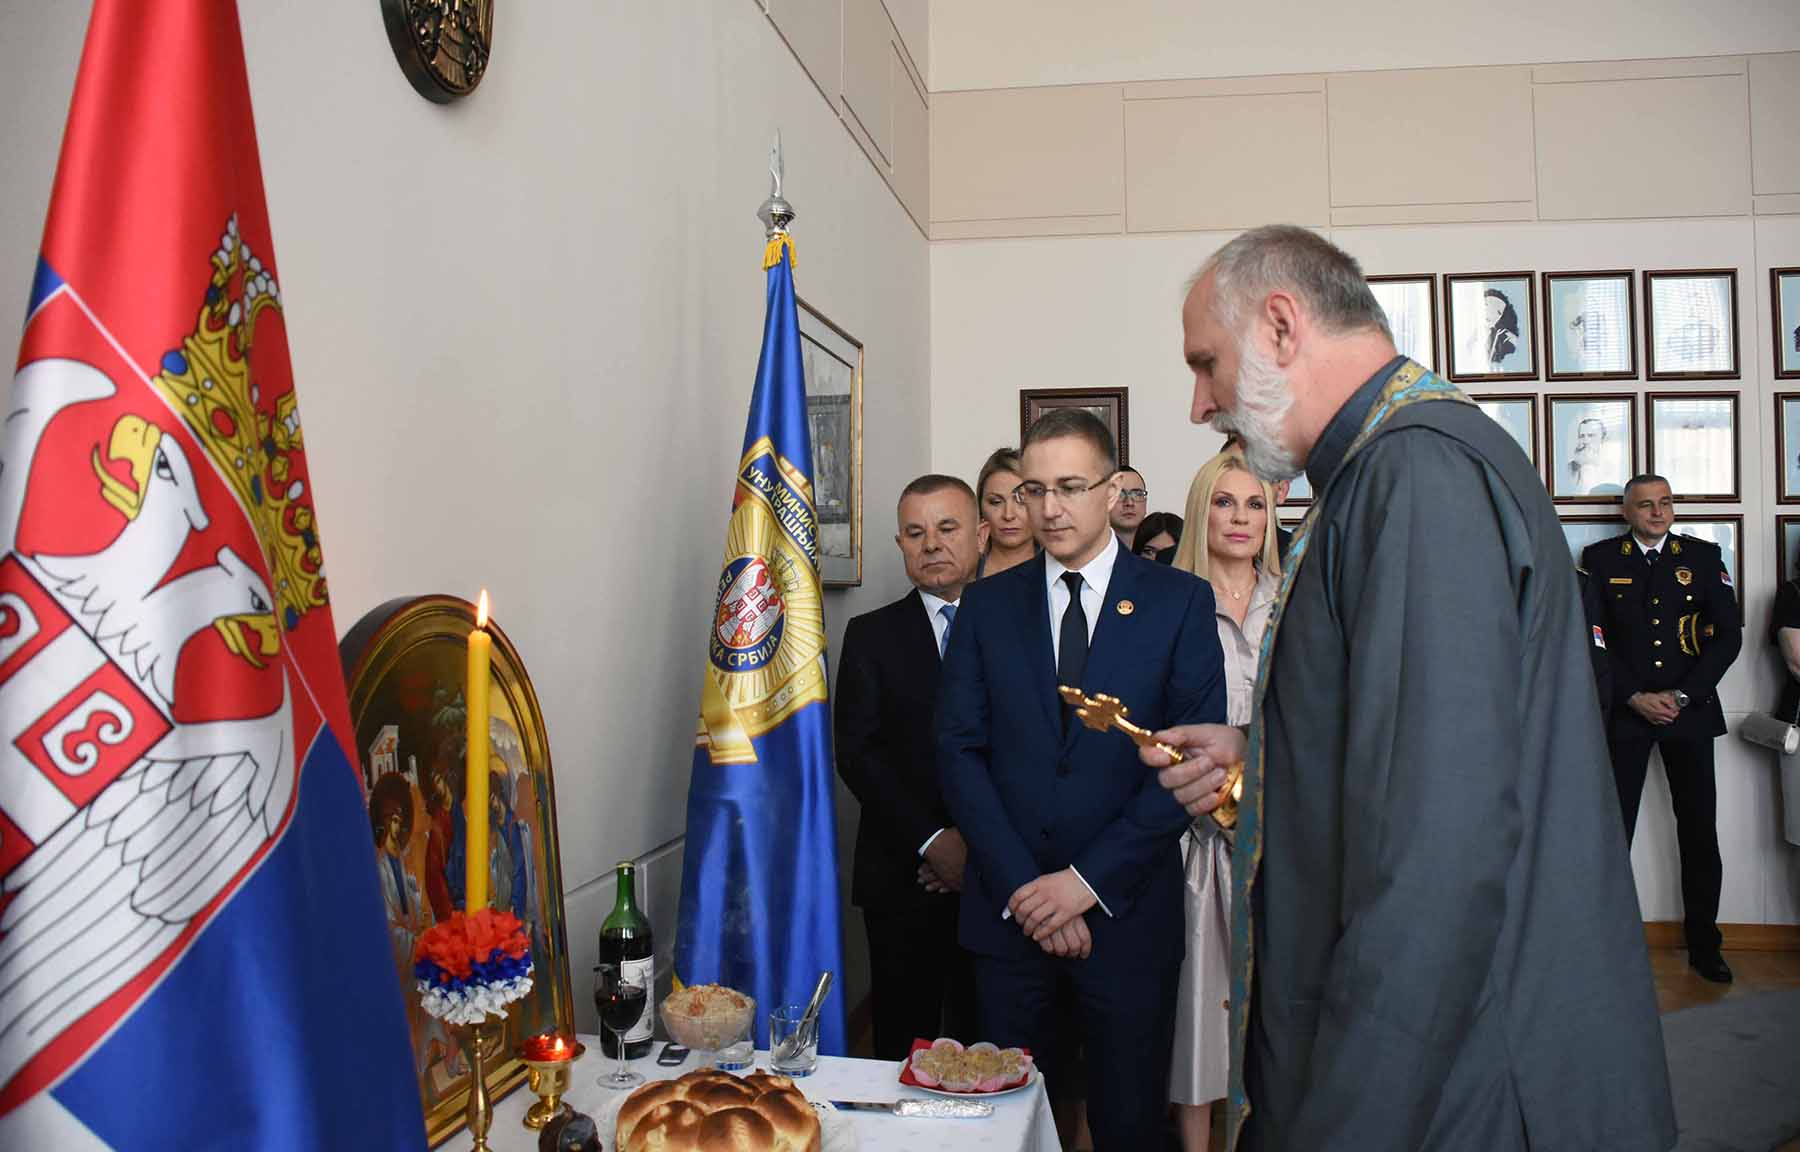 Svečano obeležena slava Ministarstva unutrašnjih poslova Republike Srbije - Sveta Trojica